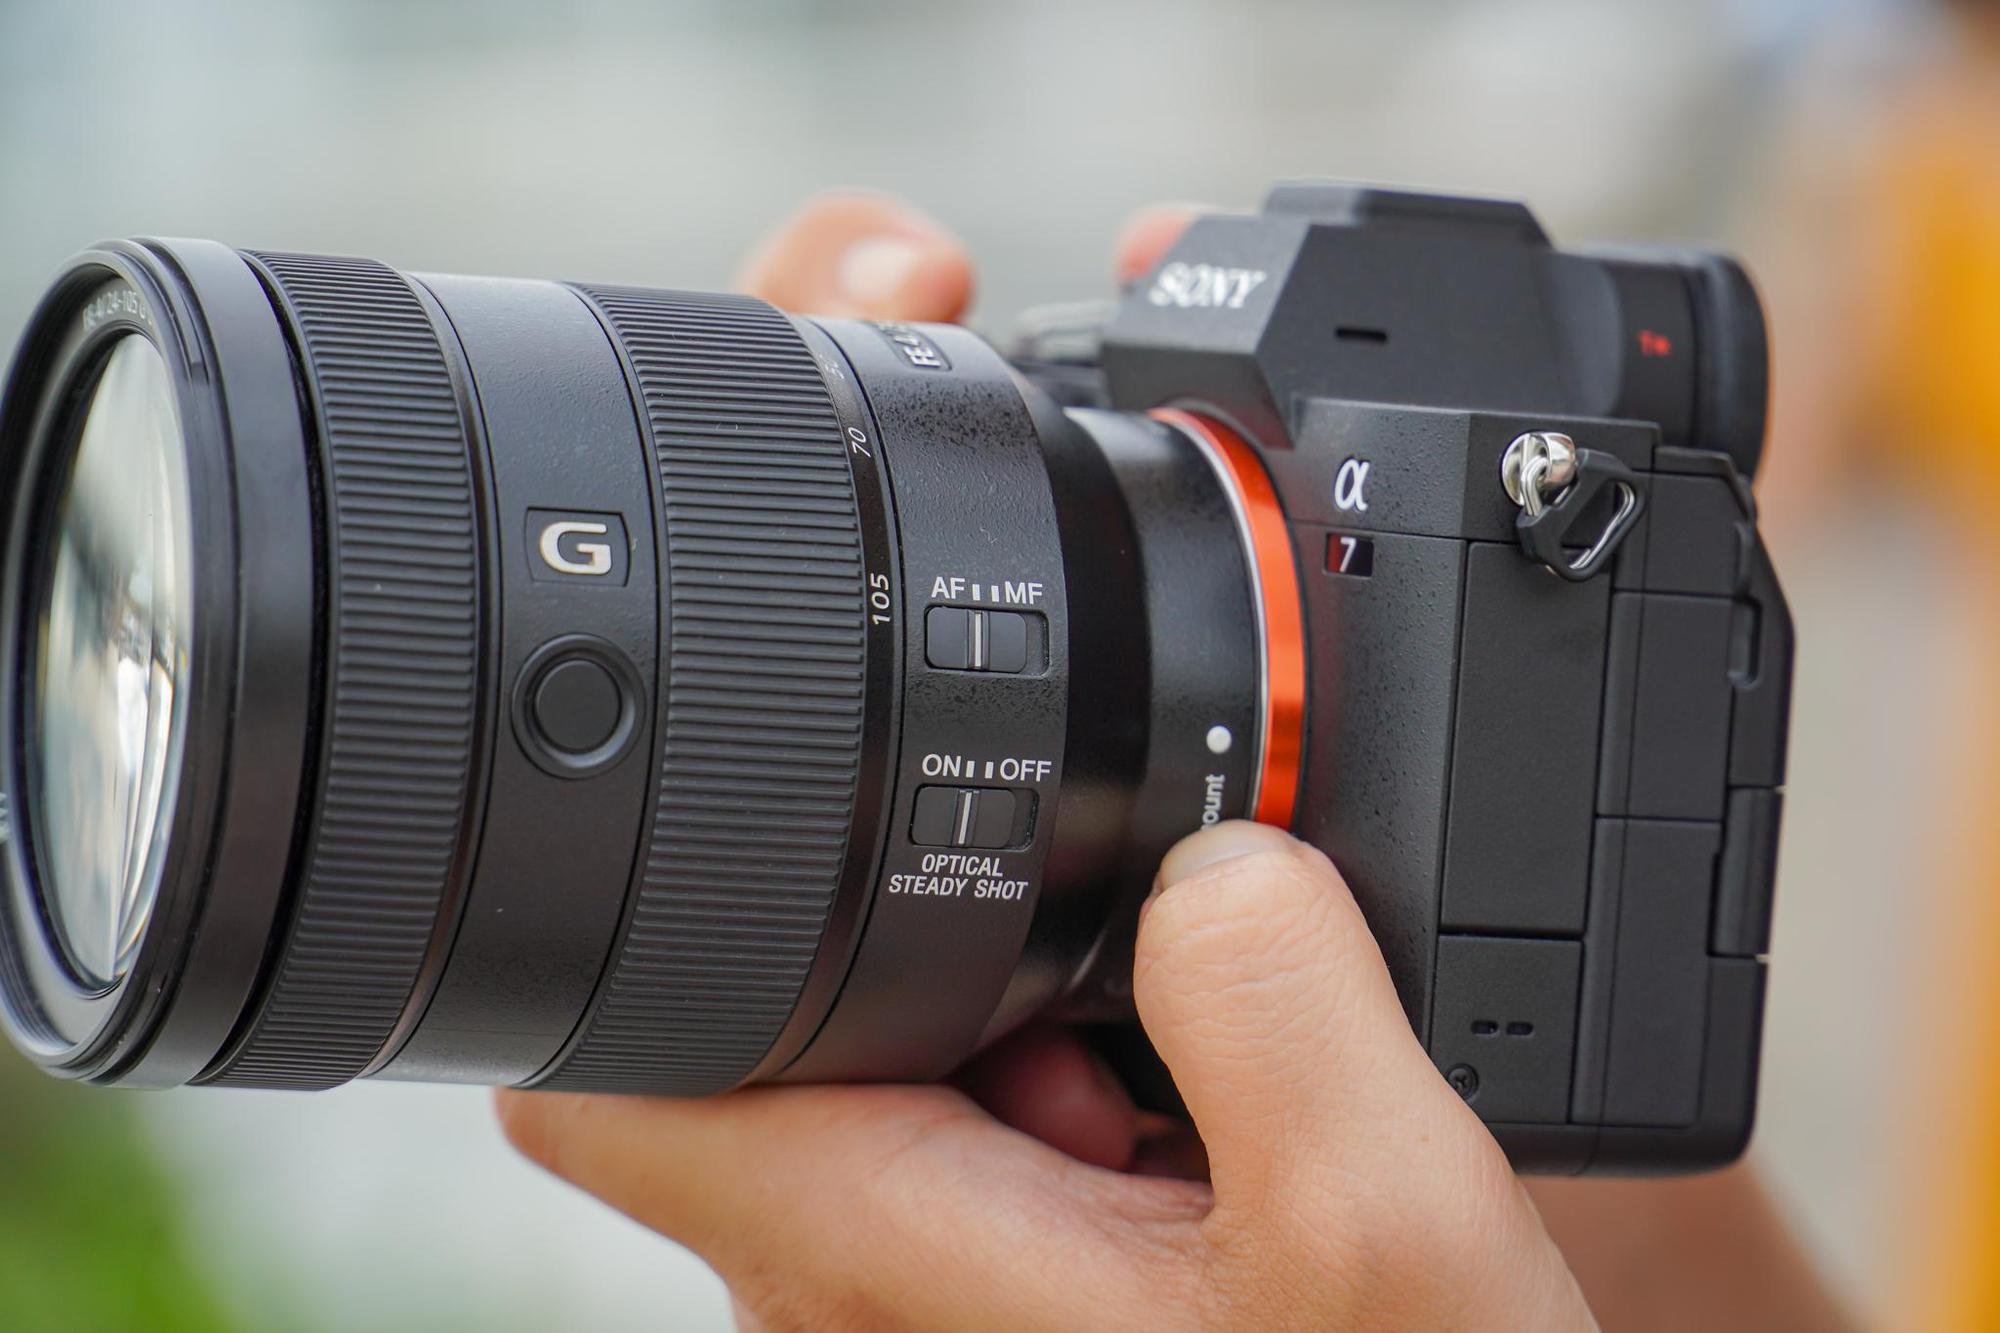 Trải nghiệm bộ đôi “siêu kit” dòng G của Sony: định chuẩn ống kính quay video đa dụng - Ảnh 2.